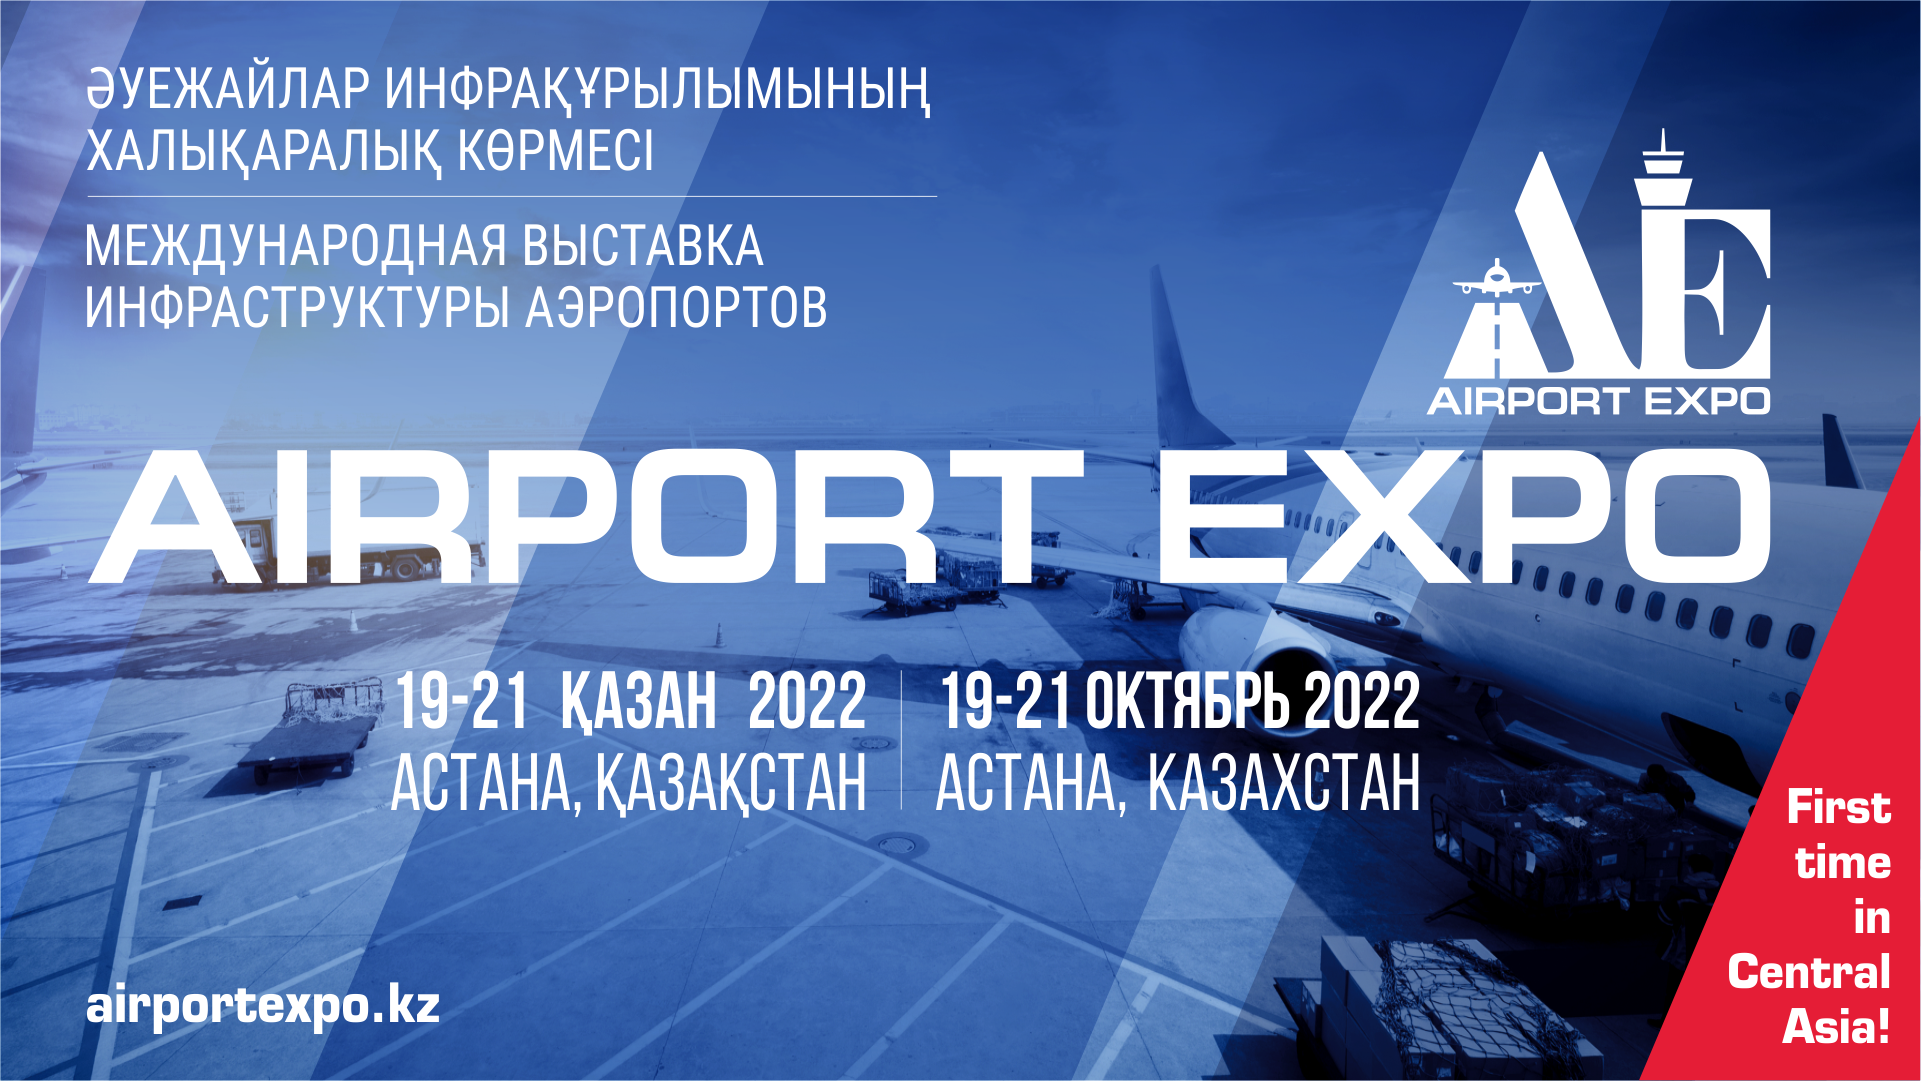 EXPO халықаралық көрме орталығының алаңында Airport Expo'2022 көрмесі өтеді